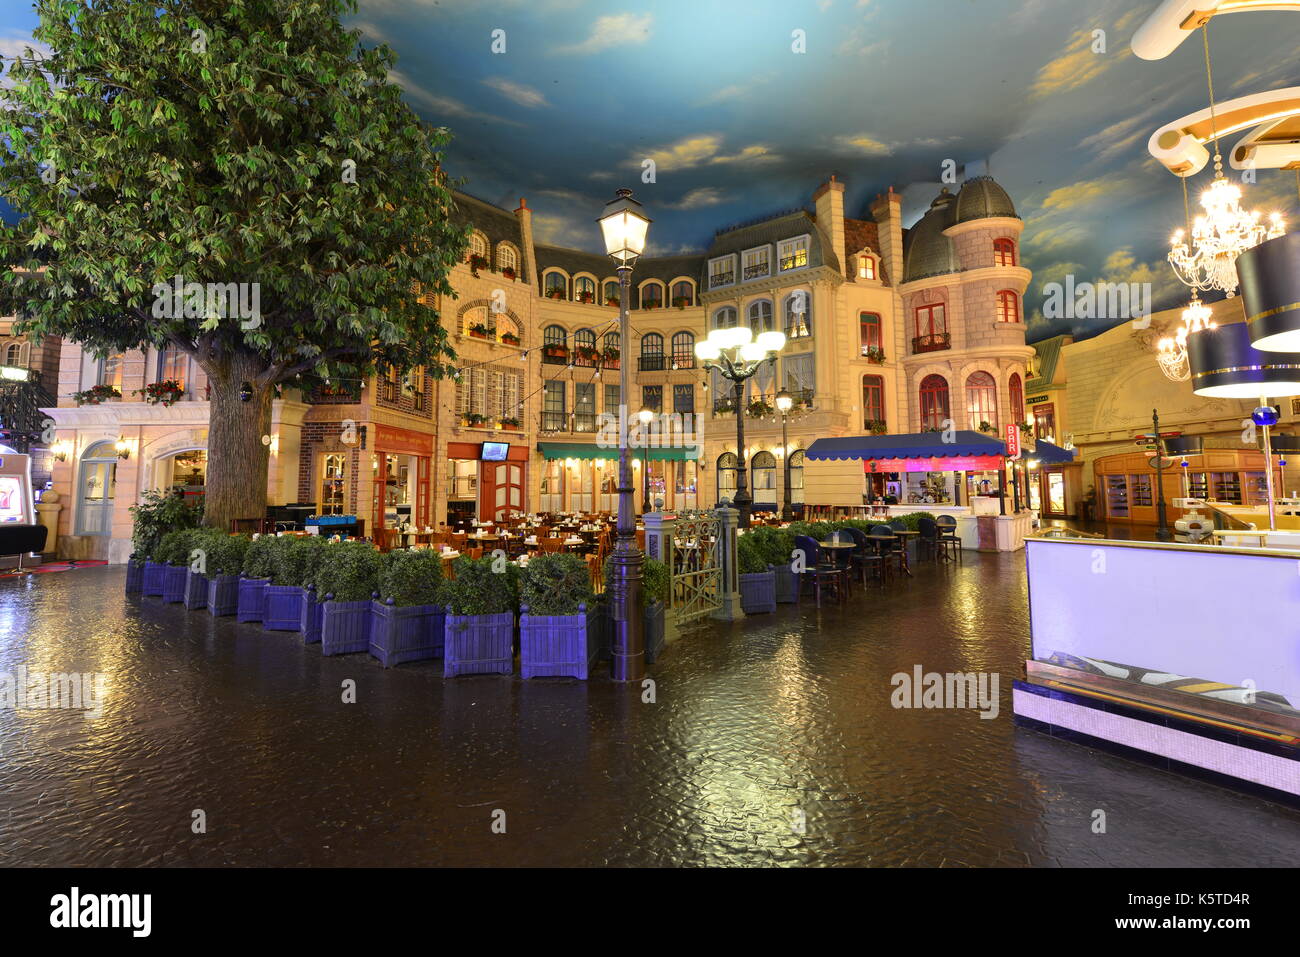 The interior of Paris hotel and casino in Las Vegas Stock Photo - Alamy